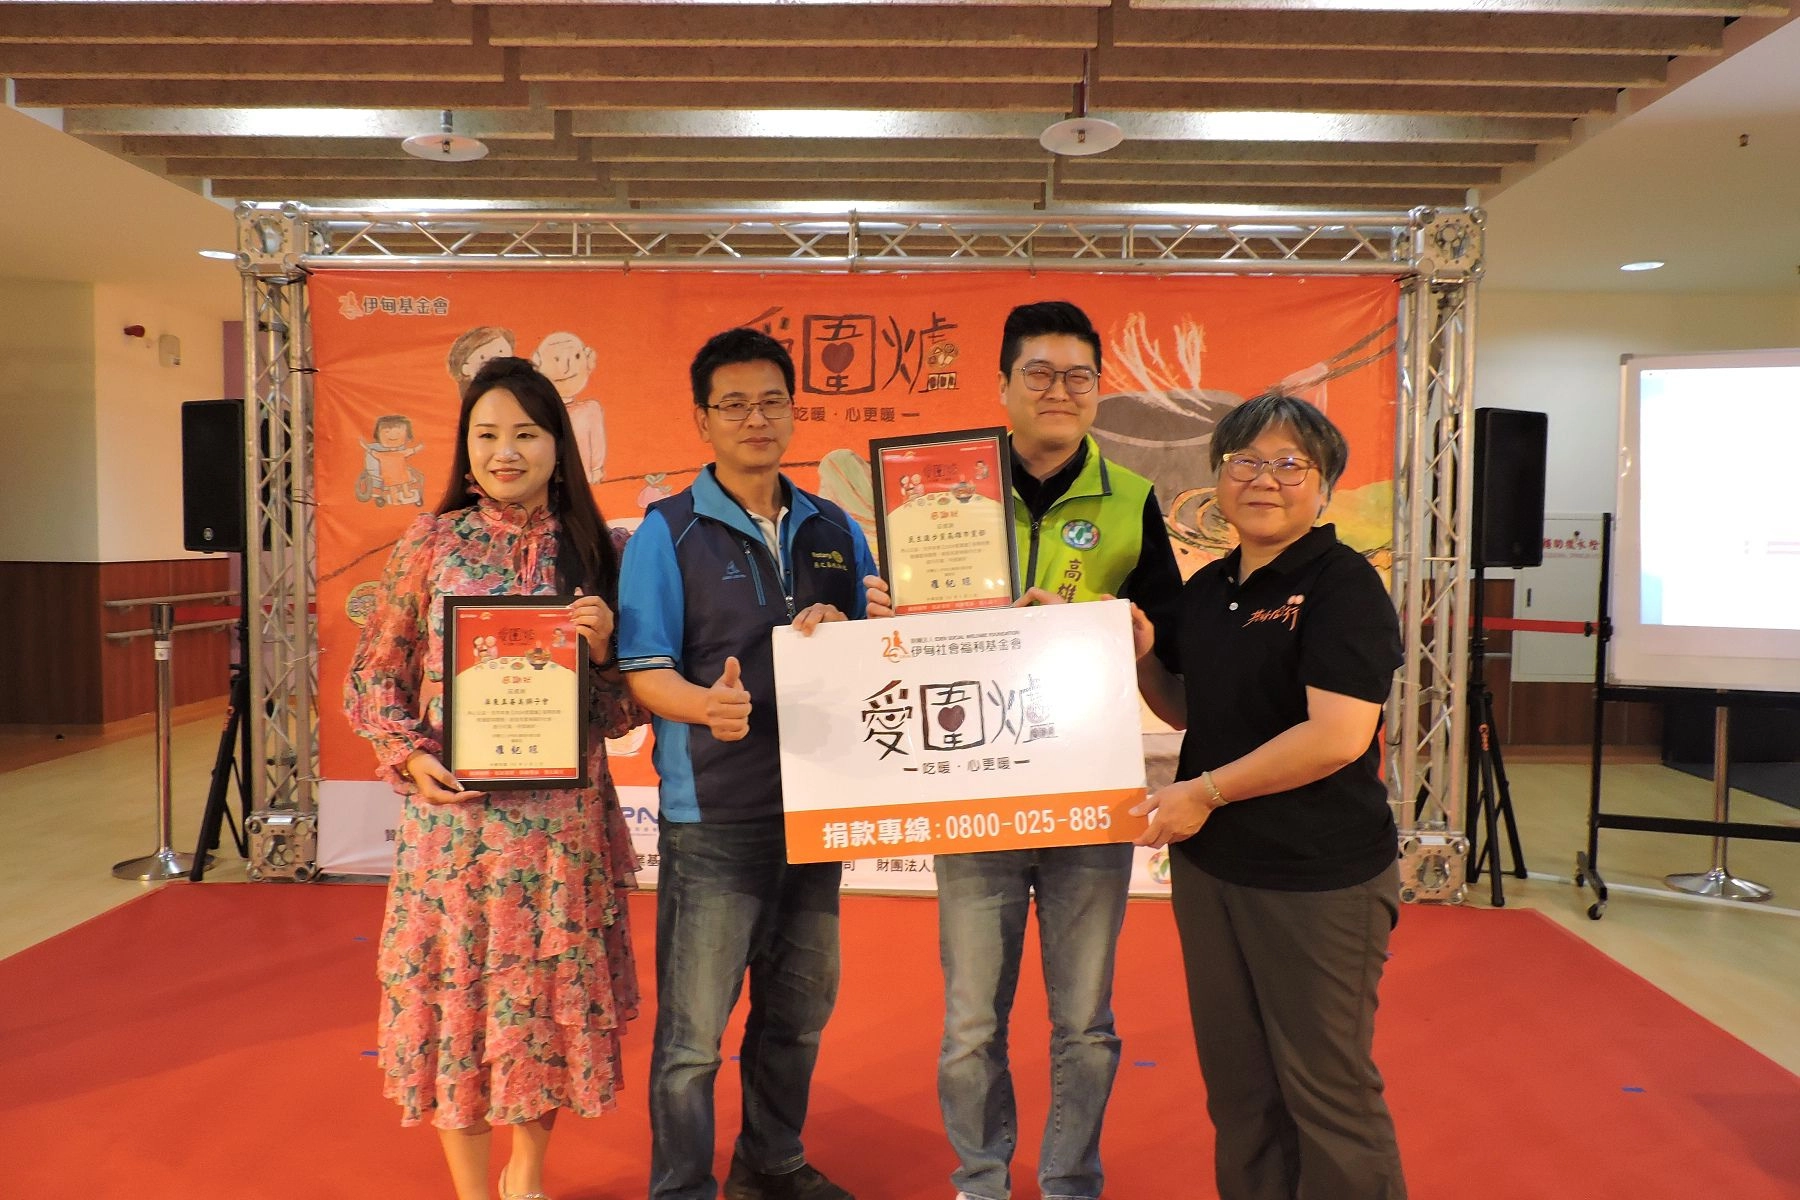 燕巢家園主任楊意賢(右1)頒發感謝狀感謝在地企業的支持